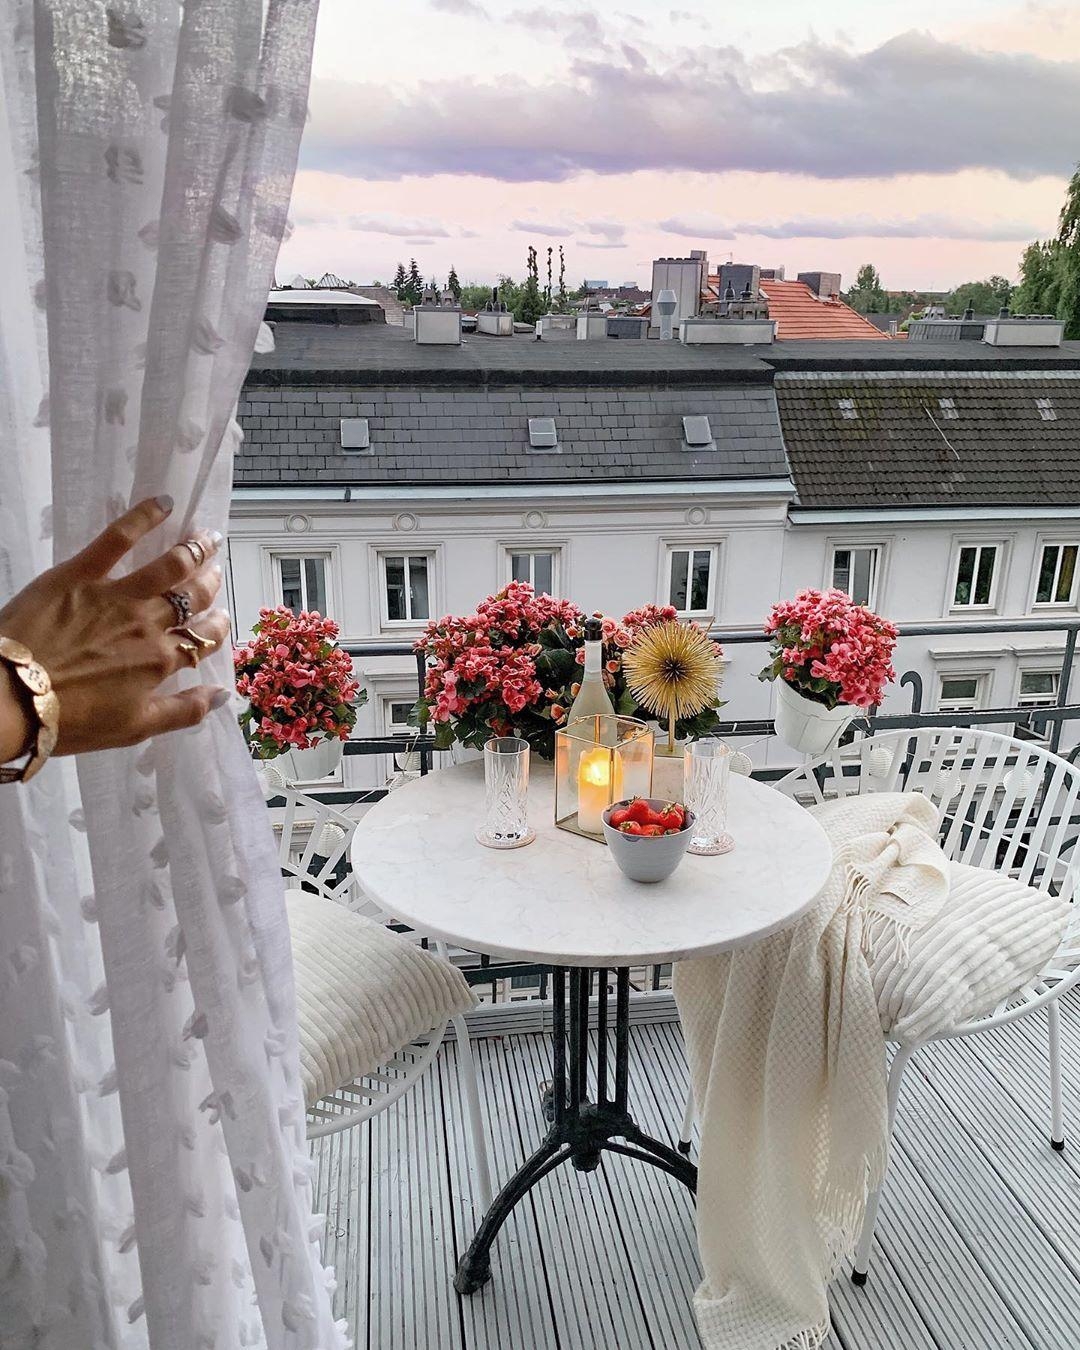 Balcony view 

#balkon #ausblick #balkonien #couchstyle #tisch #cozy #gemütlich #scandistyle #blumen #deko #stuhl #hygge